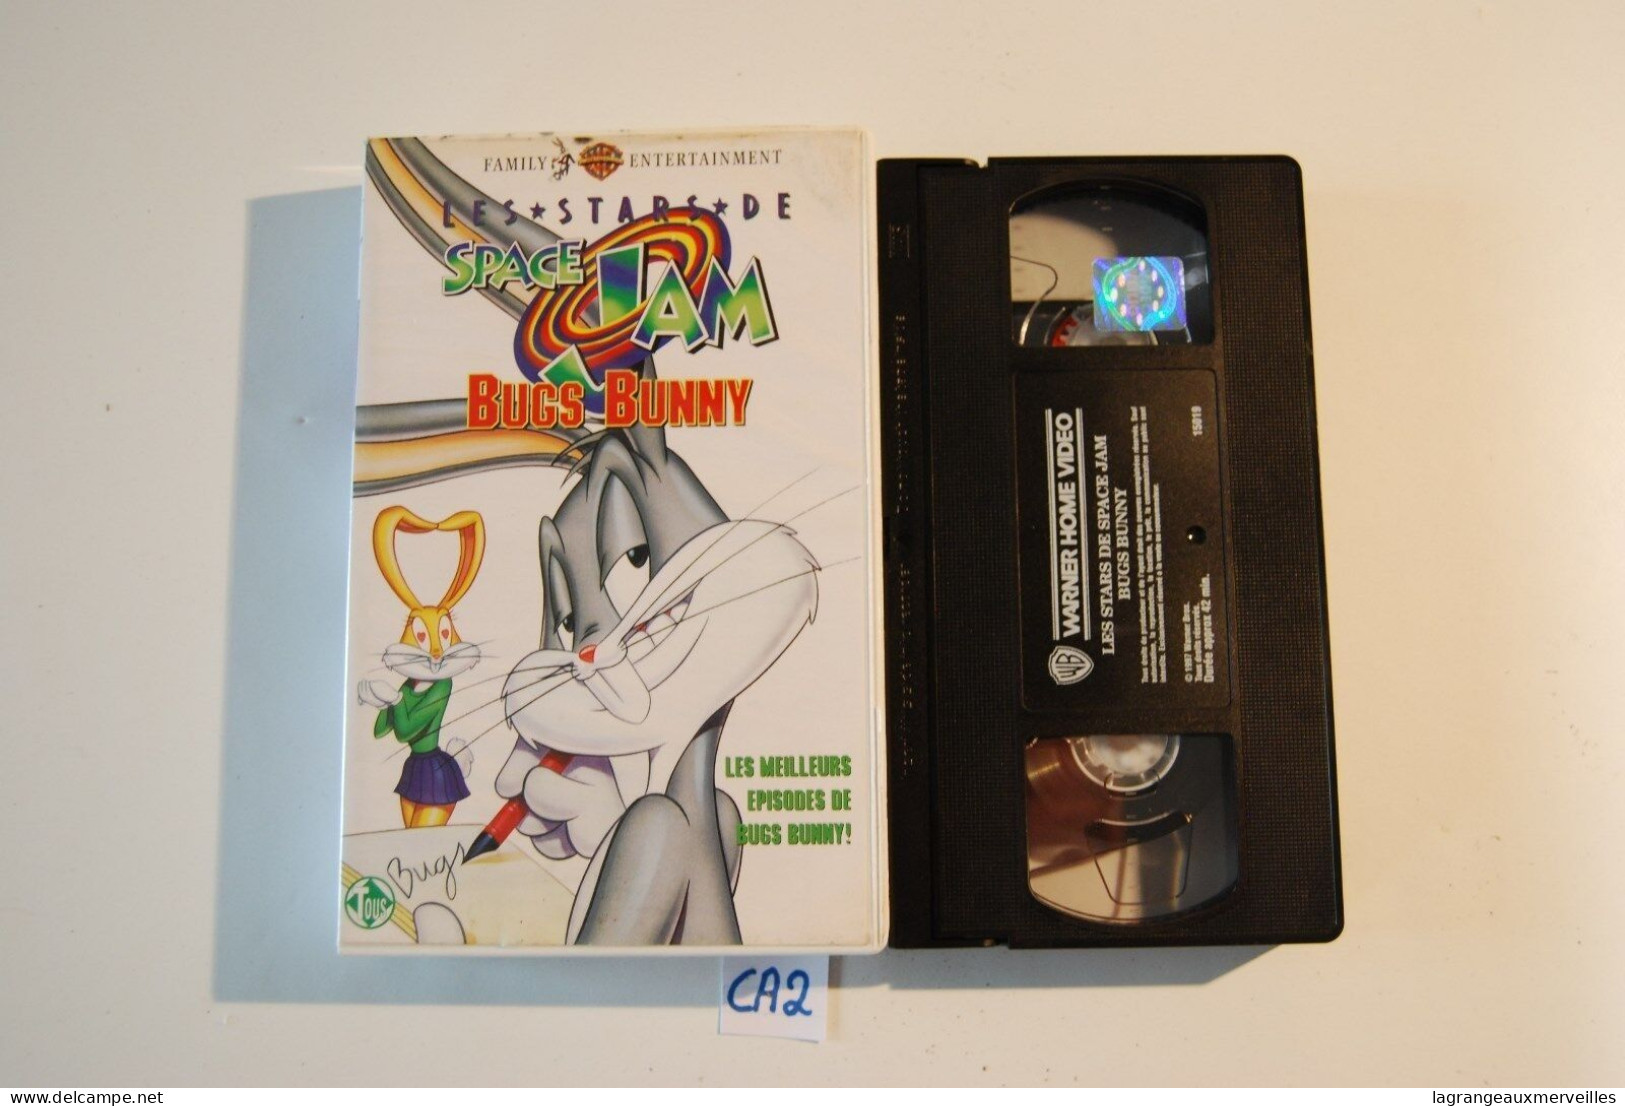 CA2 K7 VHS SPACE JAM BUGS BUNNY 1997 - Dibujos Animados